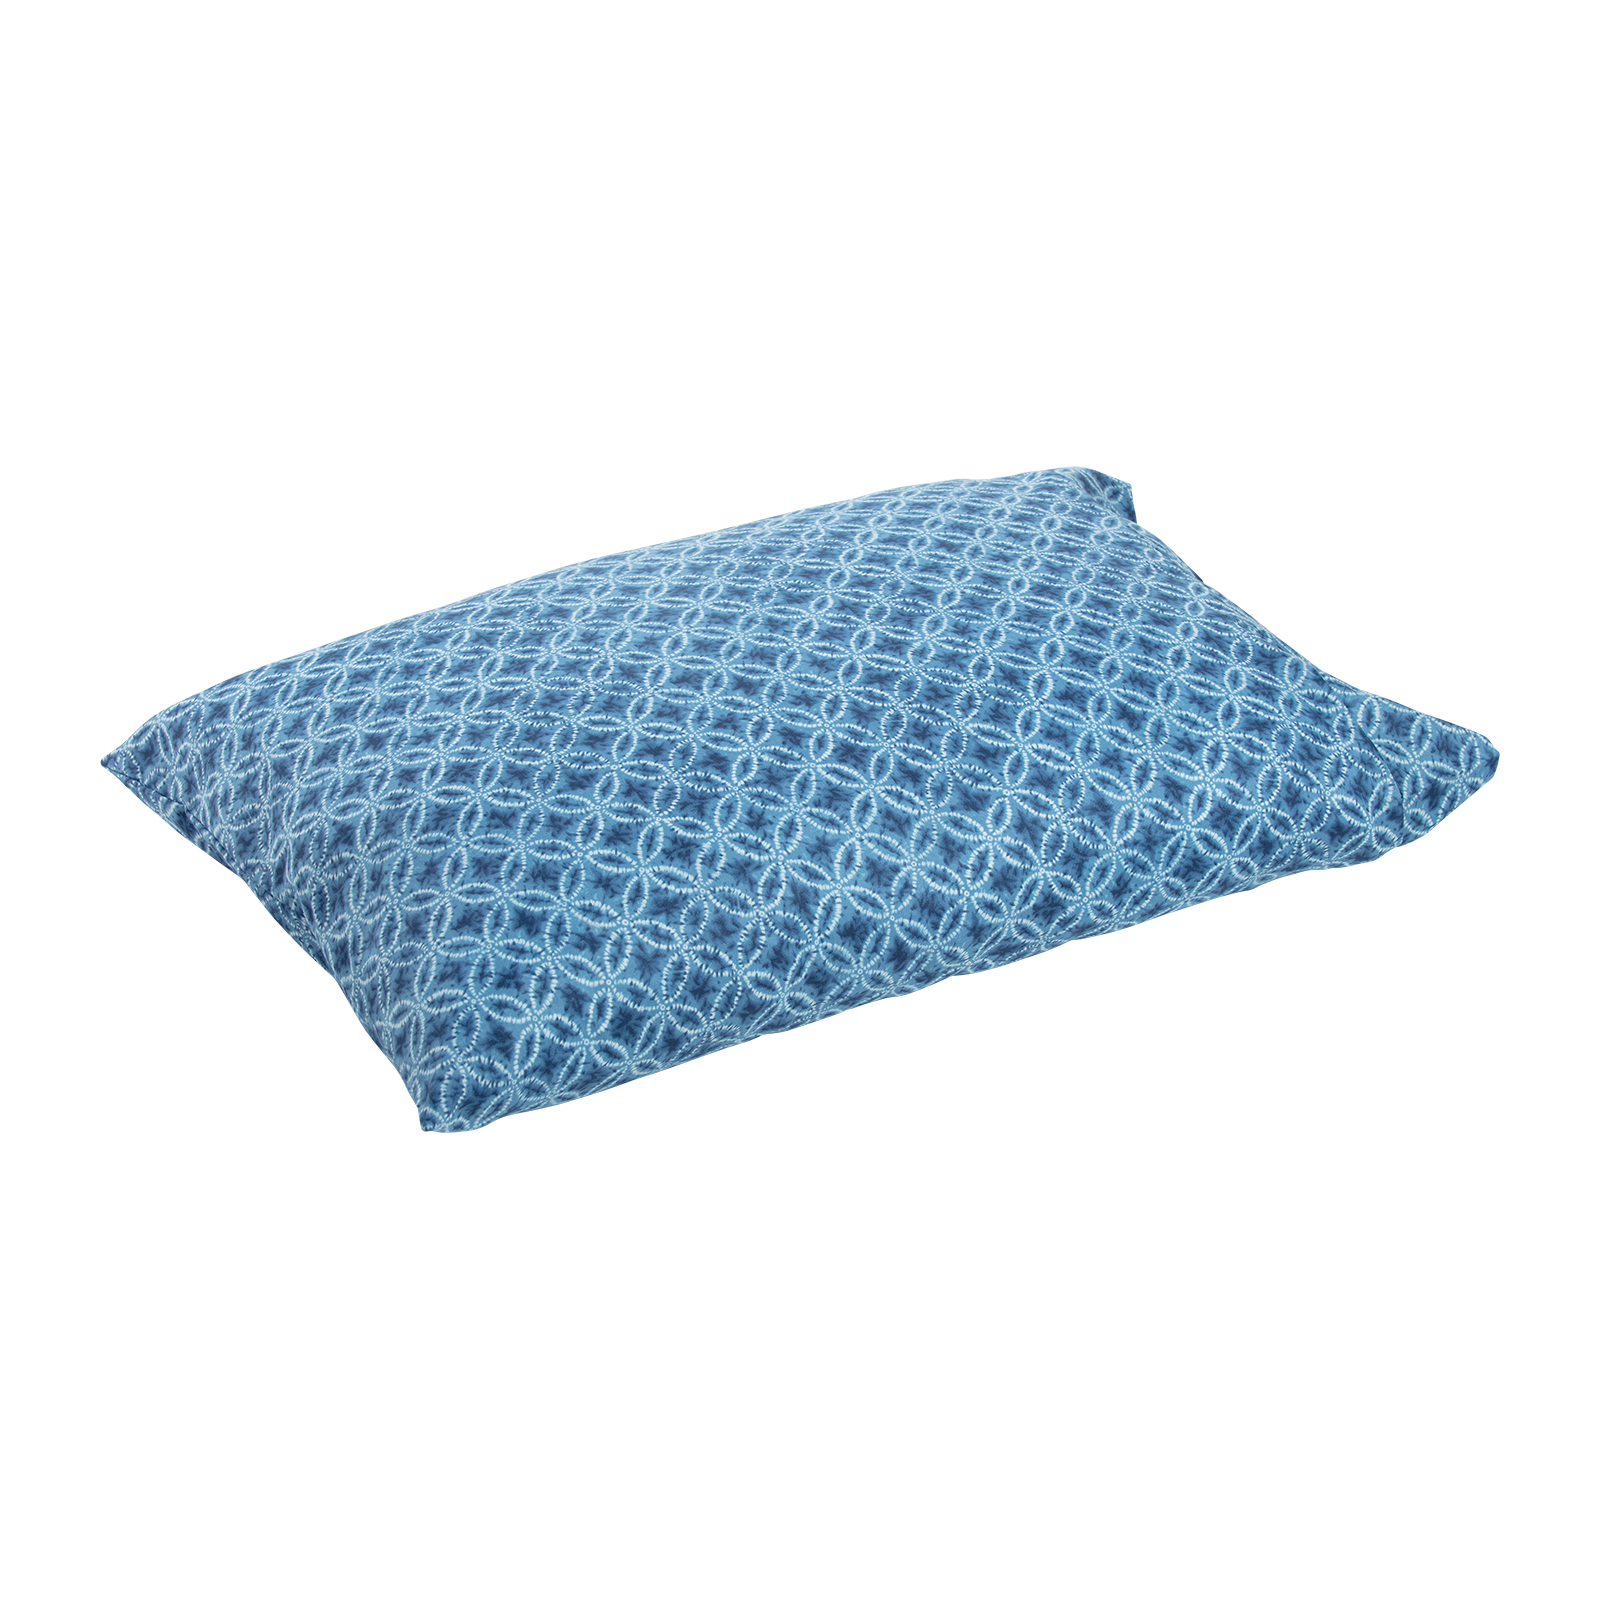 J-Life Taidai Blue Pillowcase_Pillows & Shams